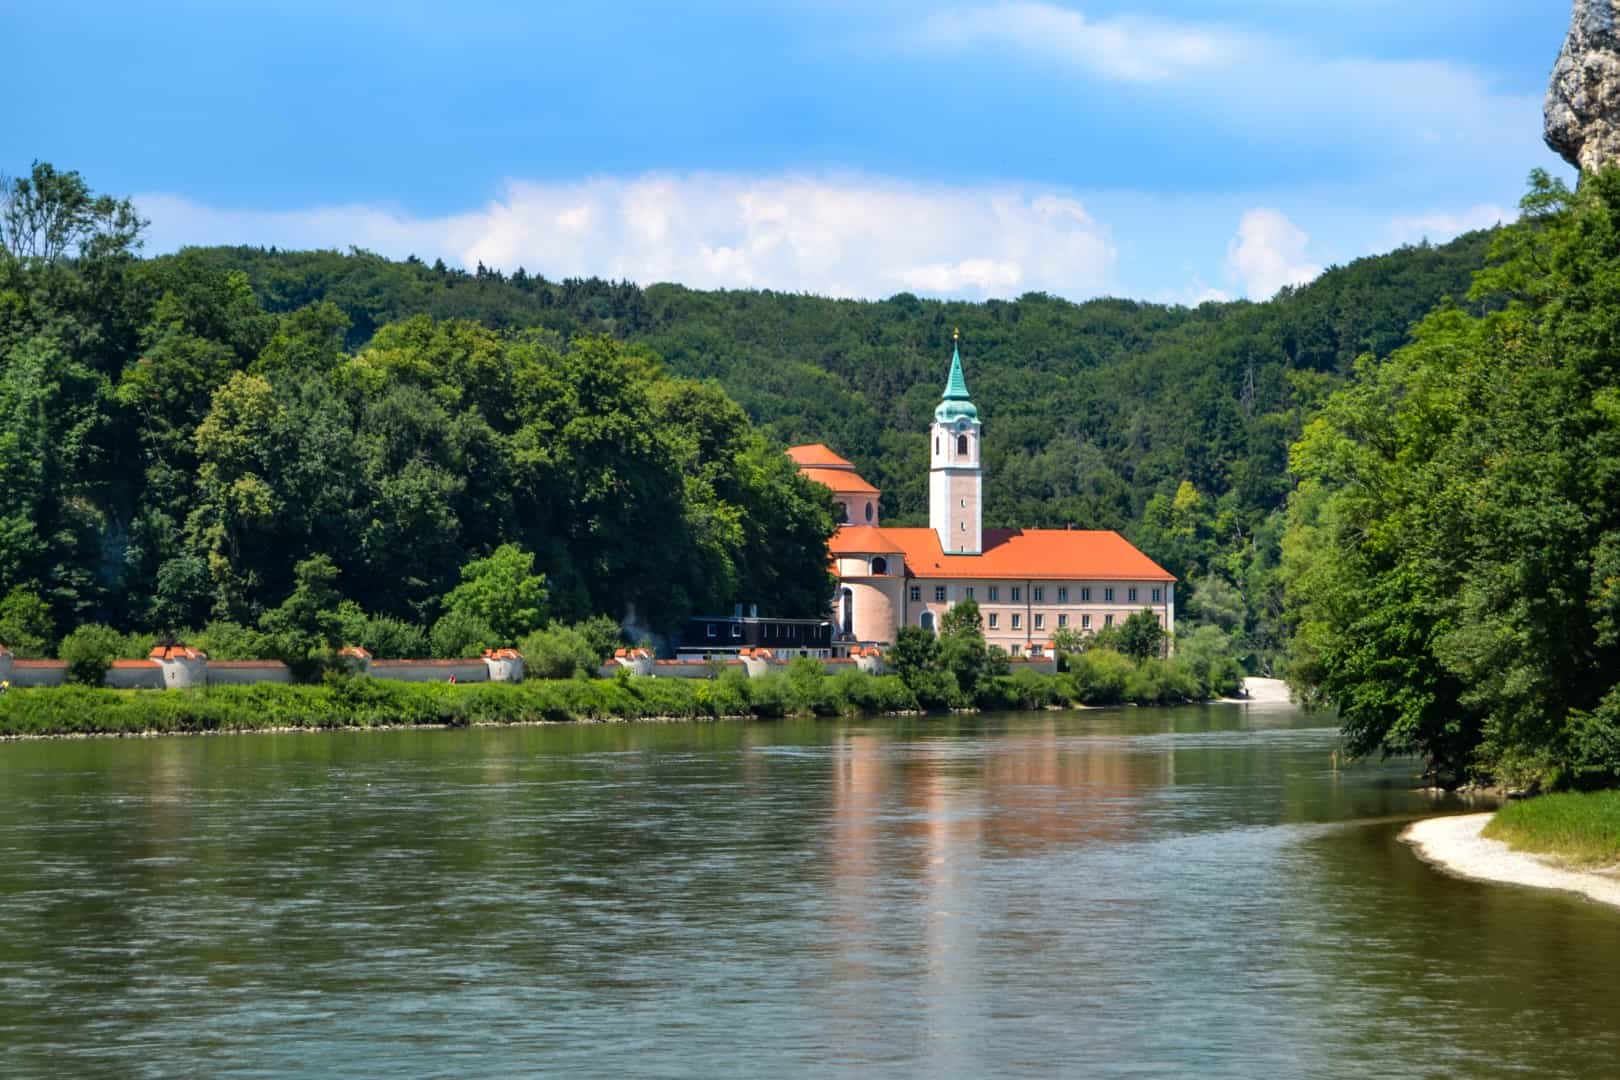 Kloster Weltenburg Abbey: The world’s oldest monastic brewery